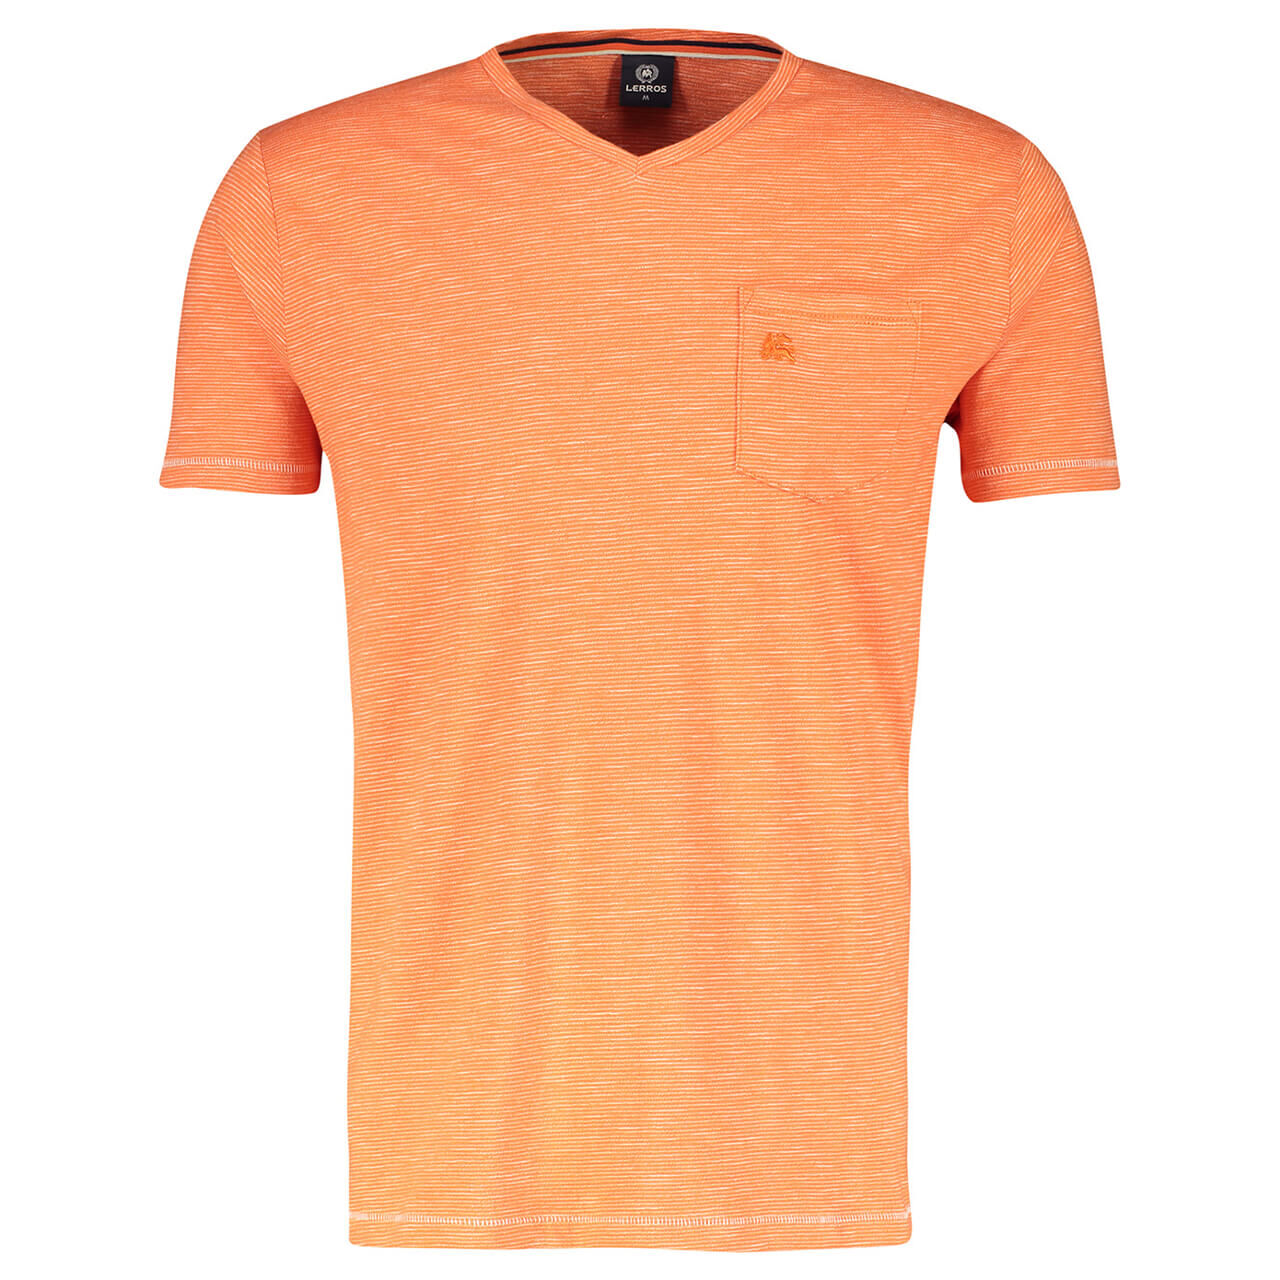 Lerros T-Shirt für Herren in Orange gestreift, FarbNr.: 937